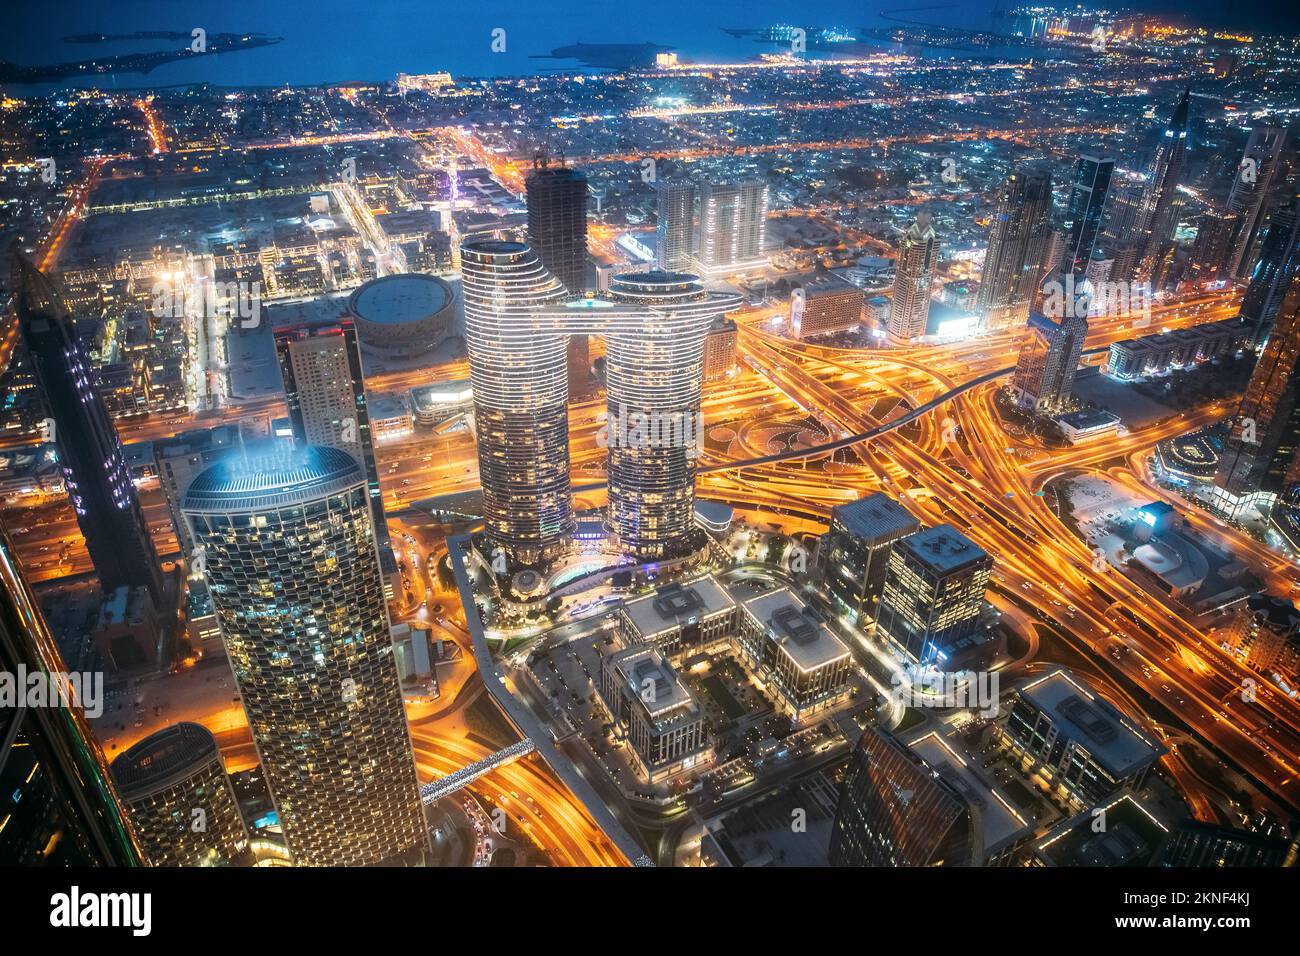 Blick auf die Skyline der Stadt bei Nacht. Nachtverkehr auf der Straße in Dubai. Das Hafengebiet und die Stadtlandschaft von Dubai im Sommer am Abend Stockfoto